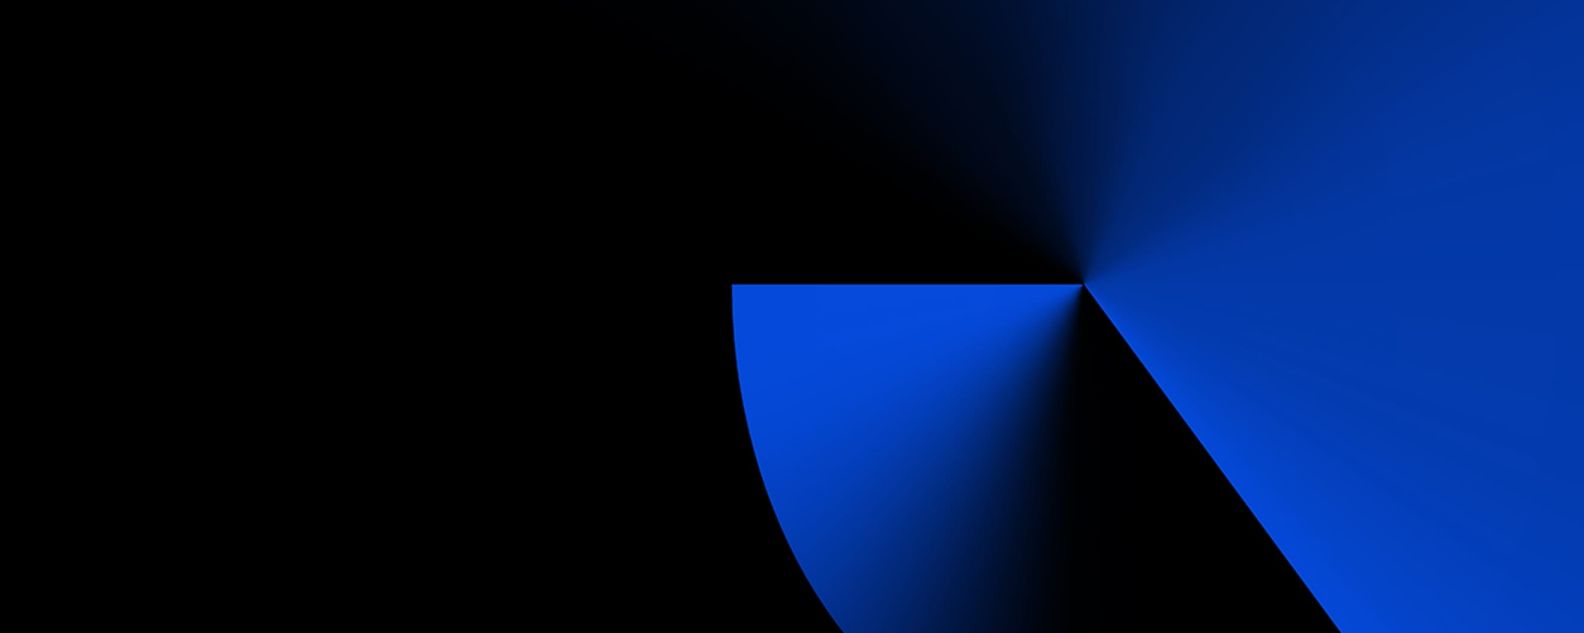 黒い背景に幾何学的な青の形